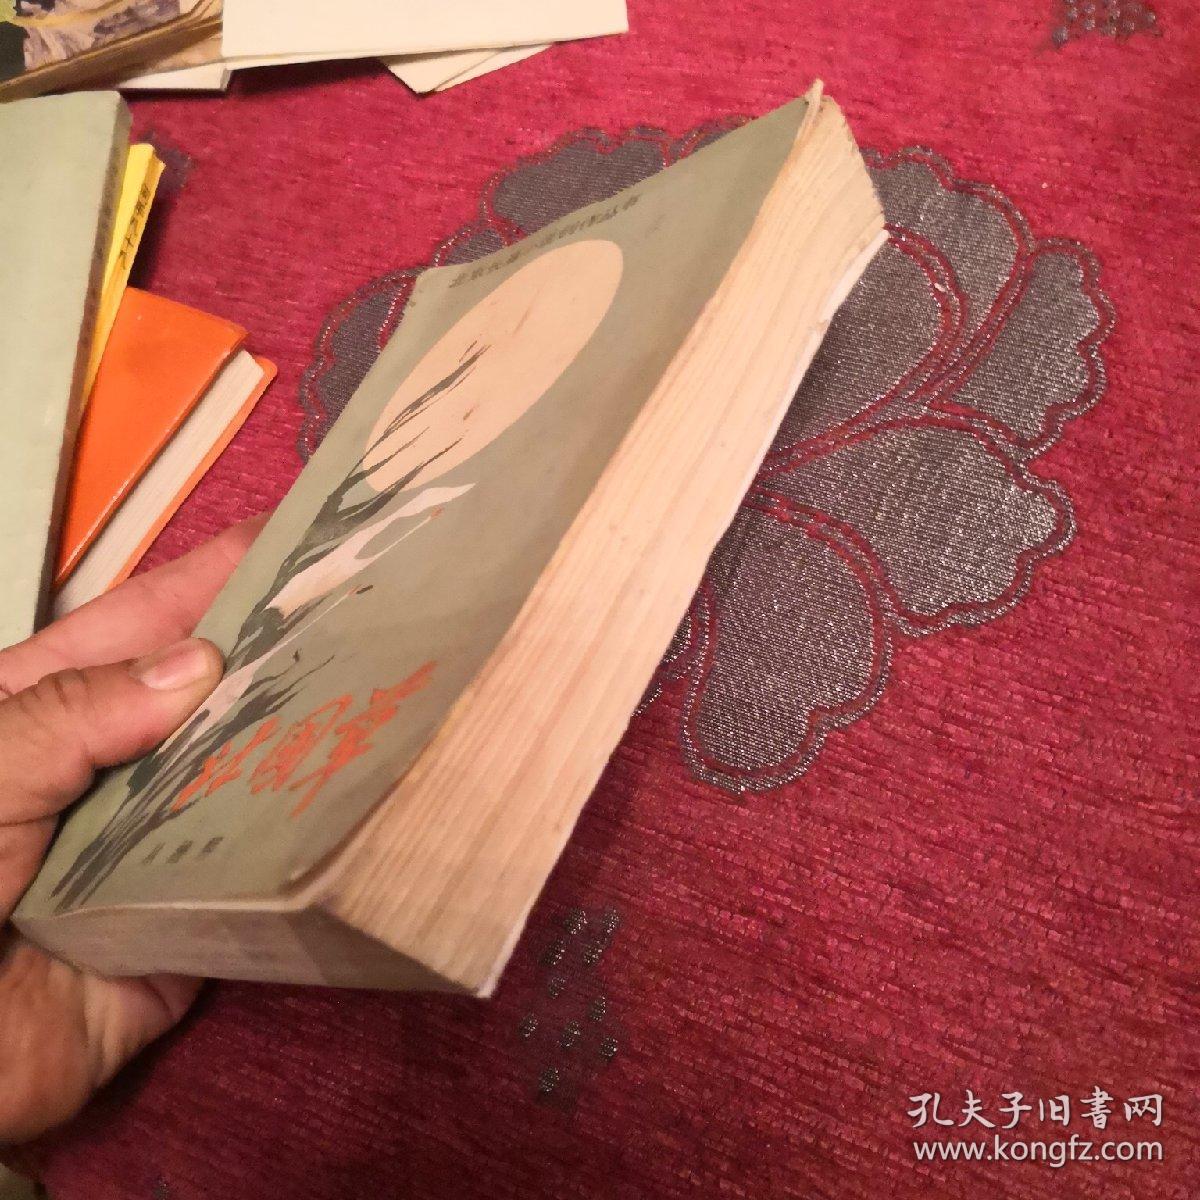 北国草：北京长篇小说创作丛书 书内有多幅图片